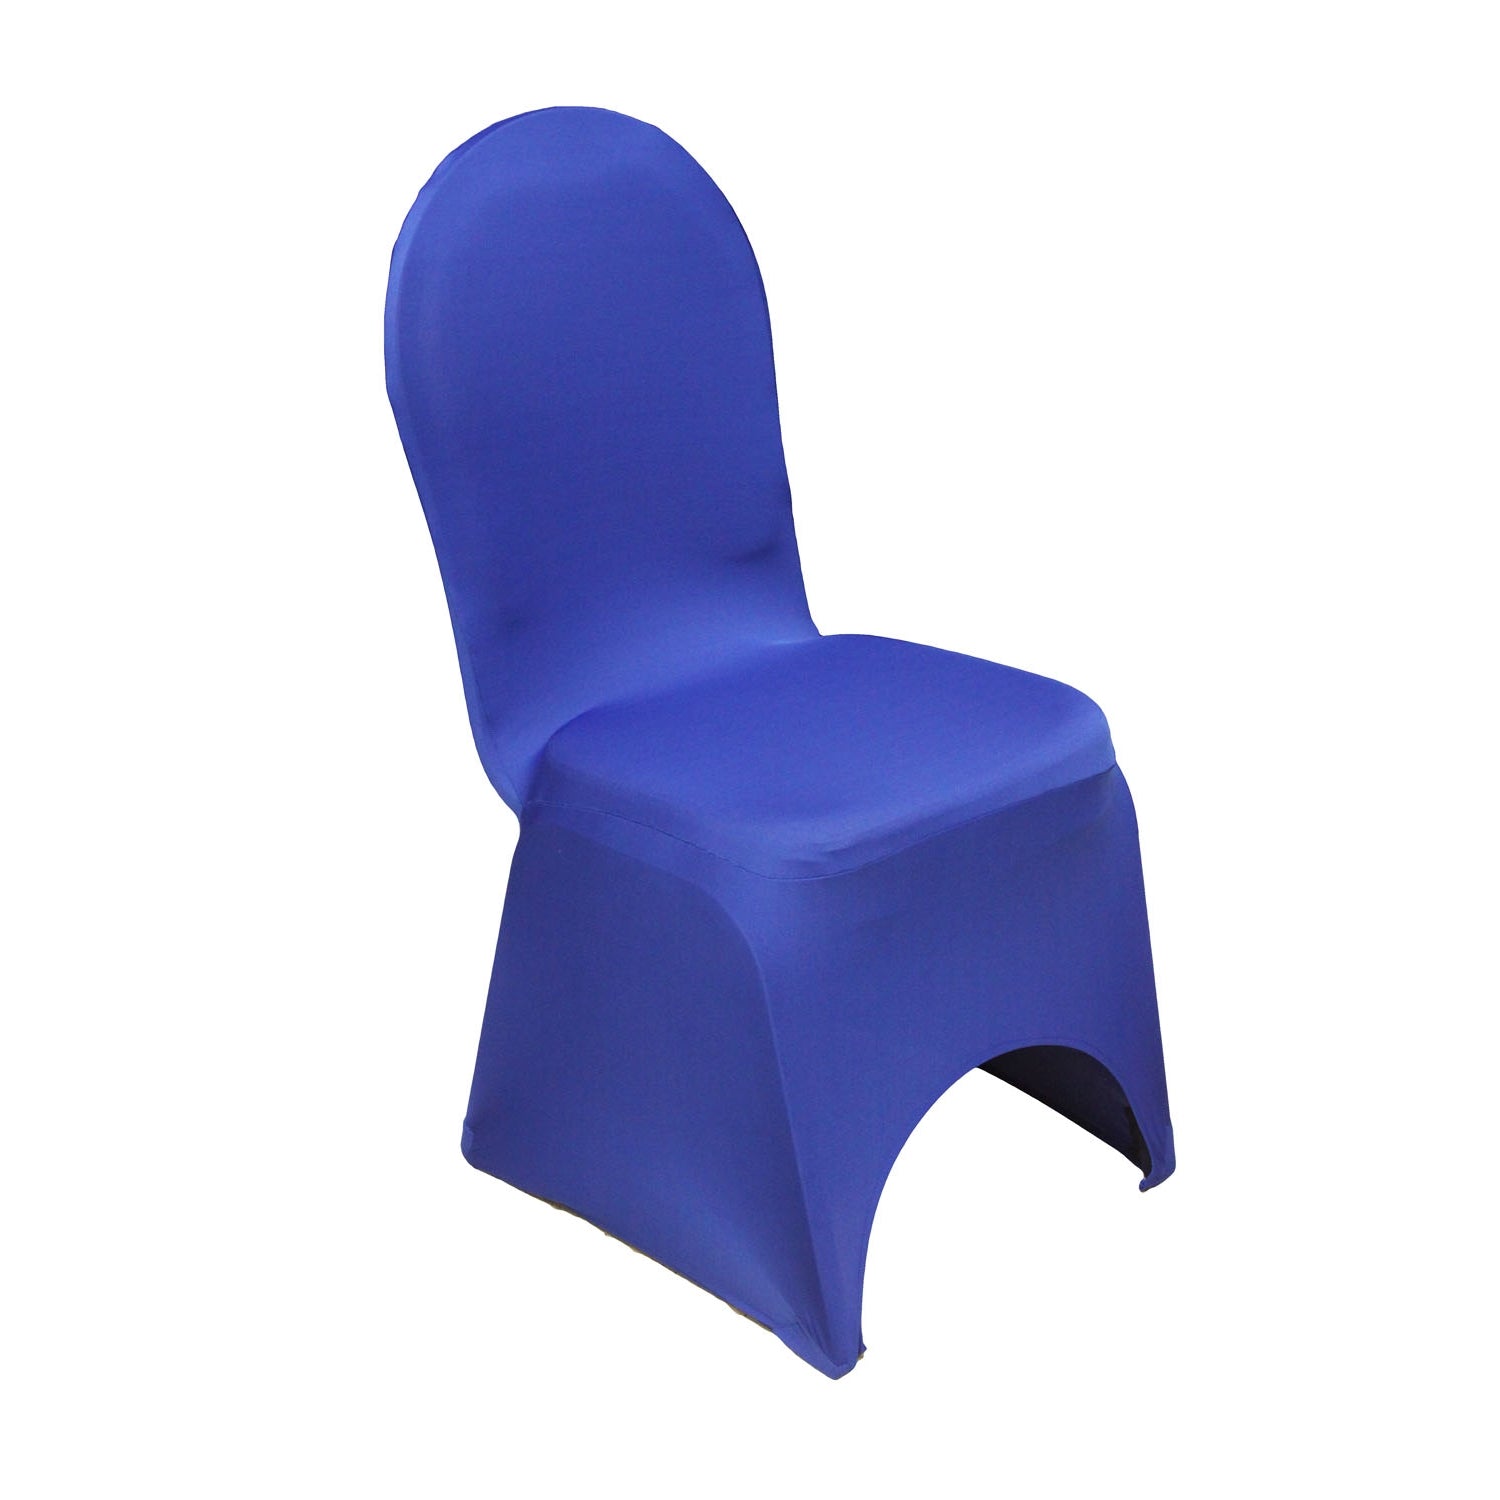 Spandex Banquet Chair Cover - Royal Blue - CV Linens